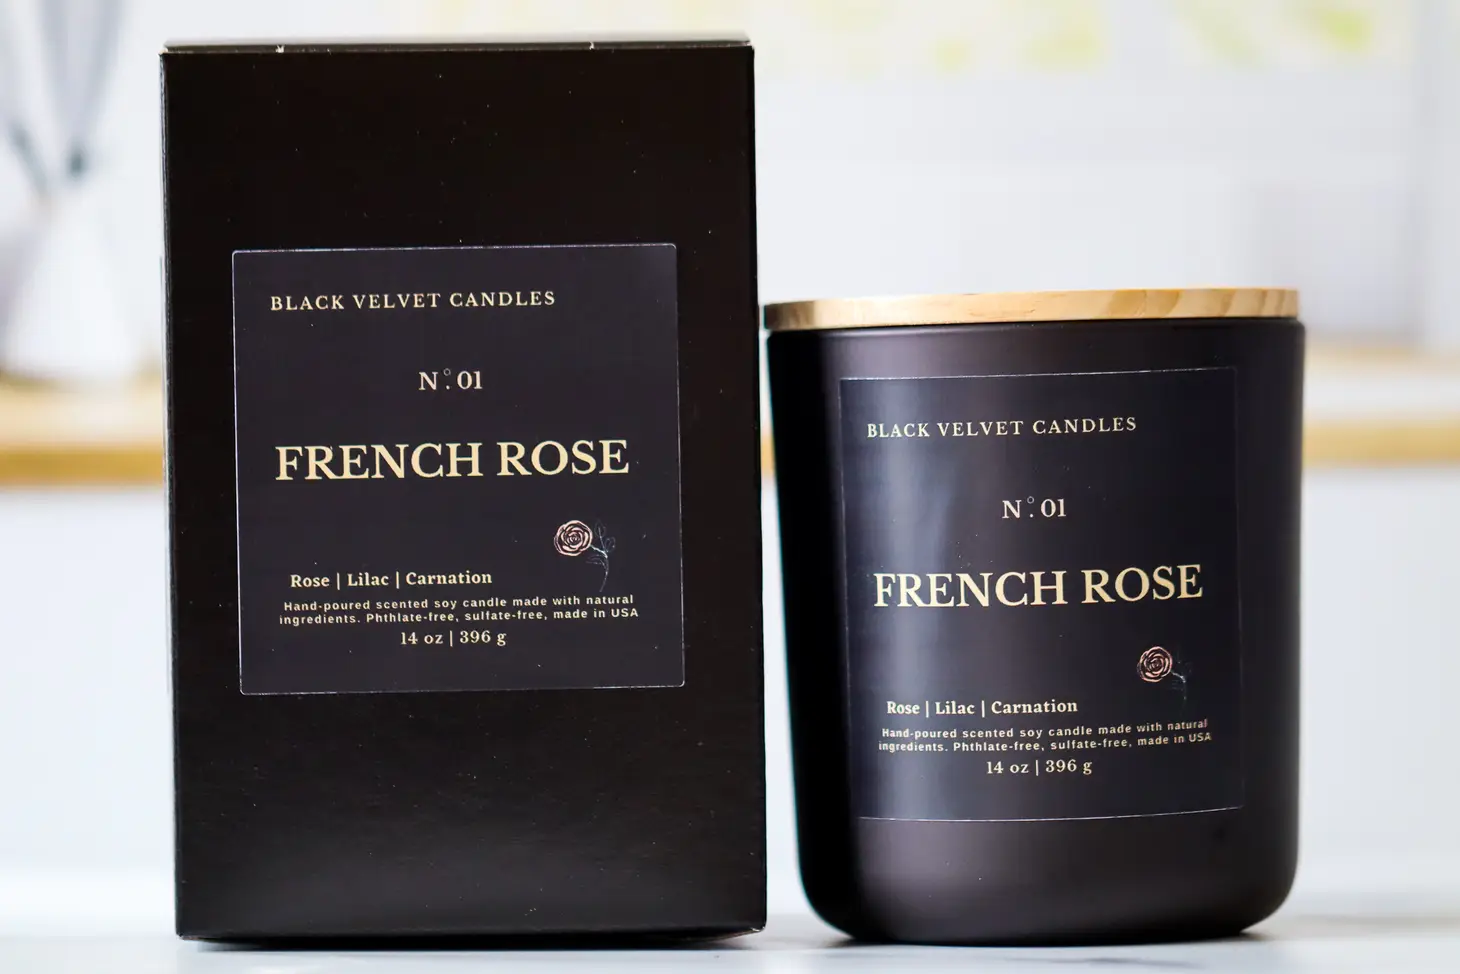 Black Velvet Candles French Rose